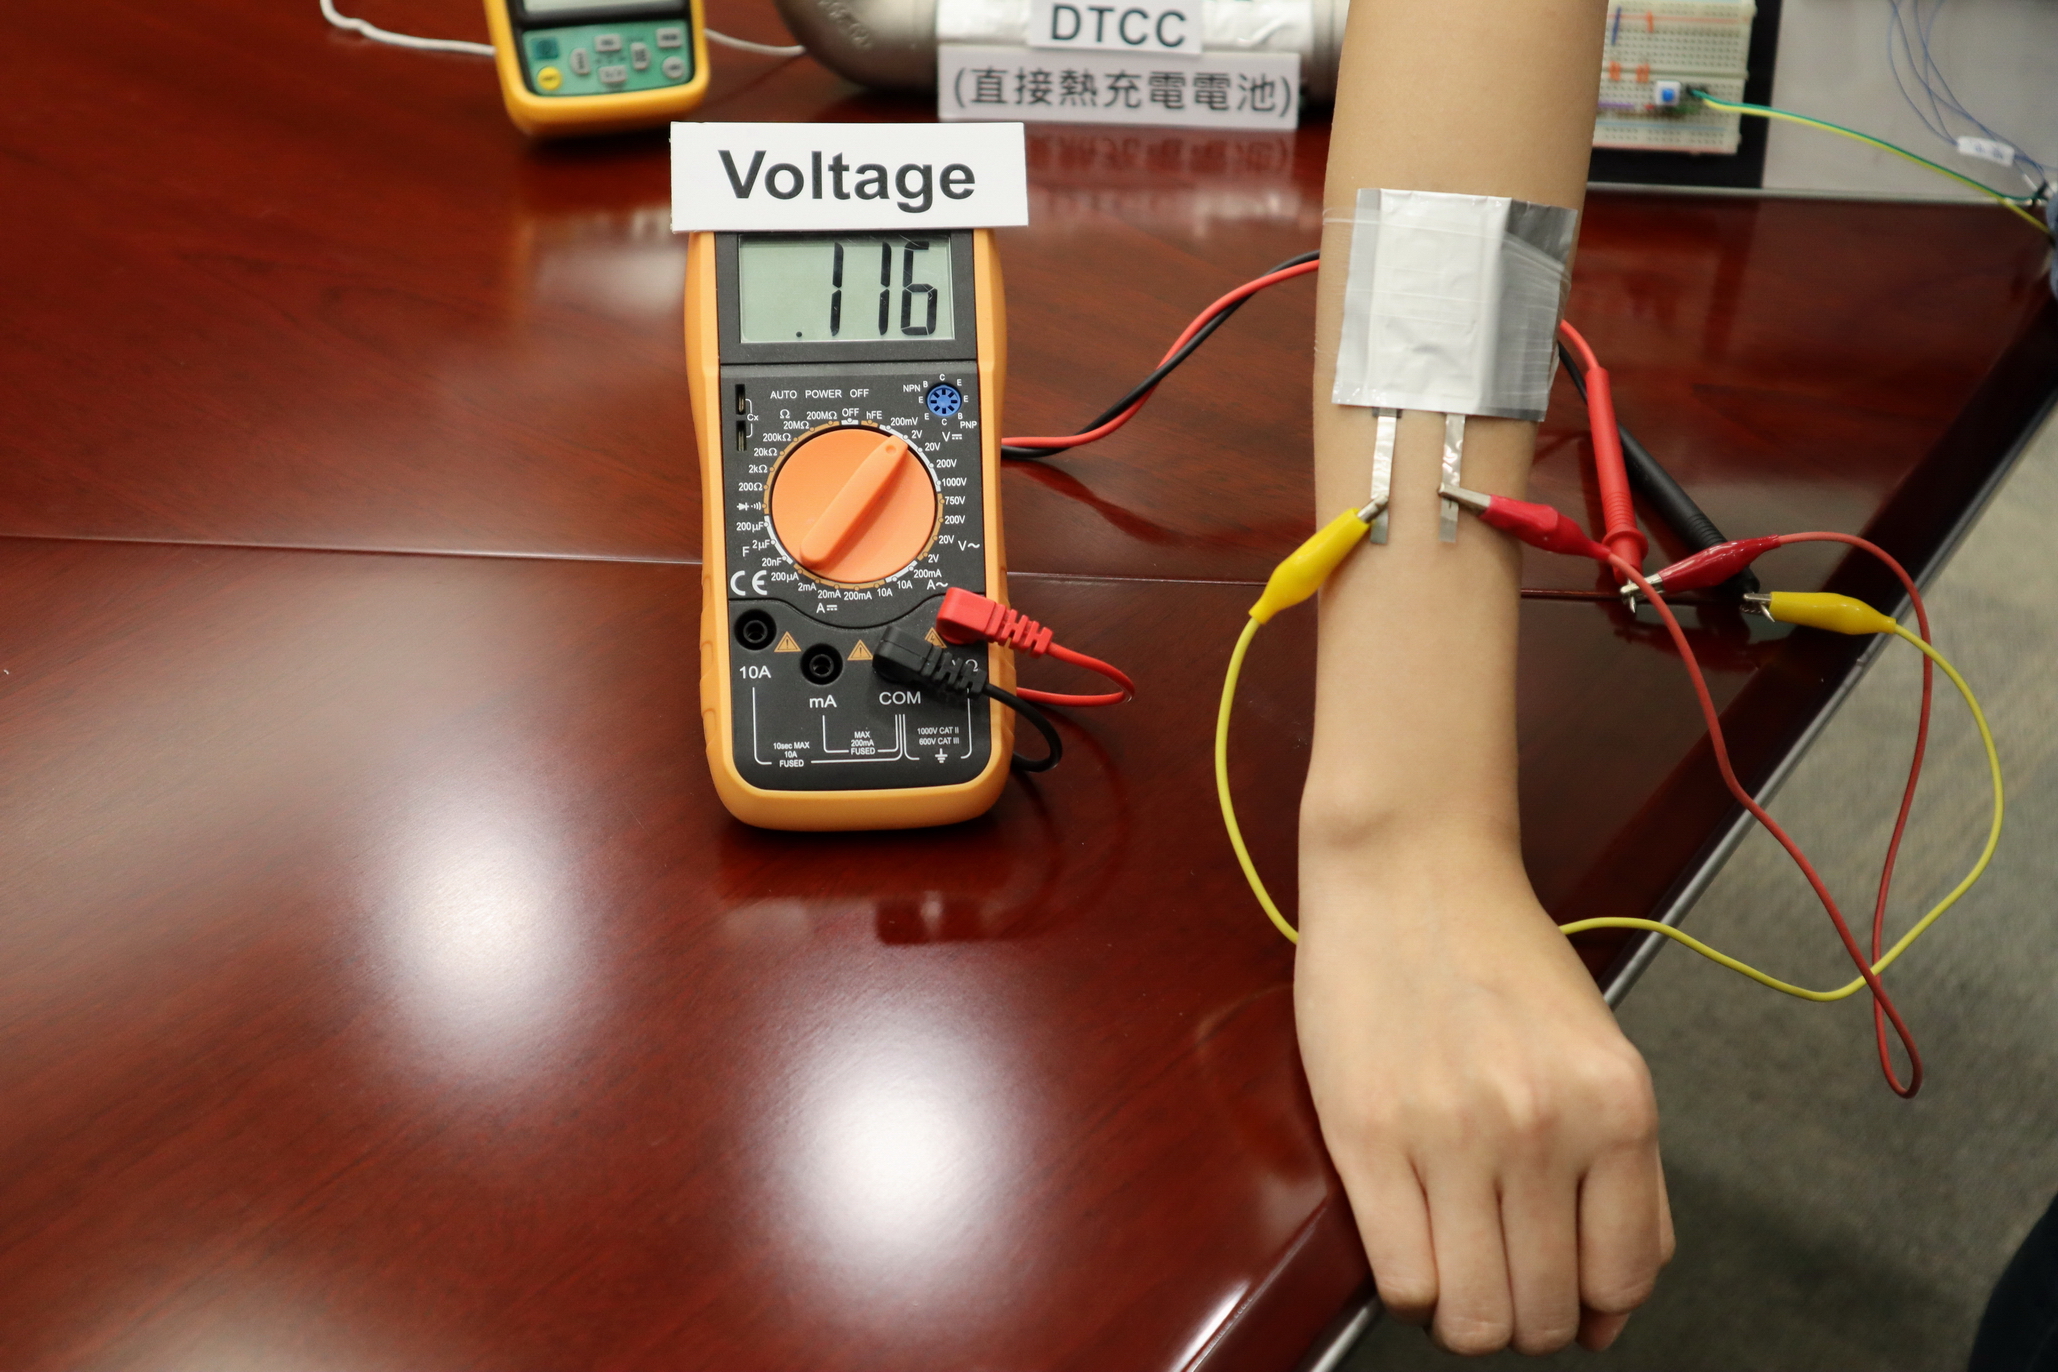 直接熱充電電池可透過體溫，為醫療監測用品供電；圖為團隊示範體感發電的過程。（陳施敏攝）